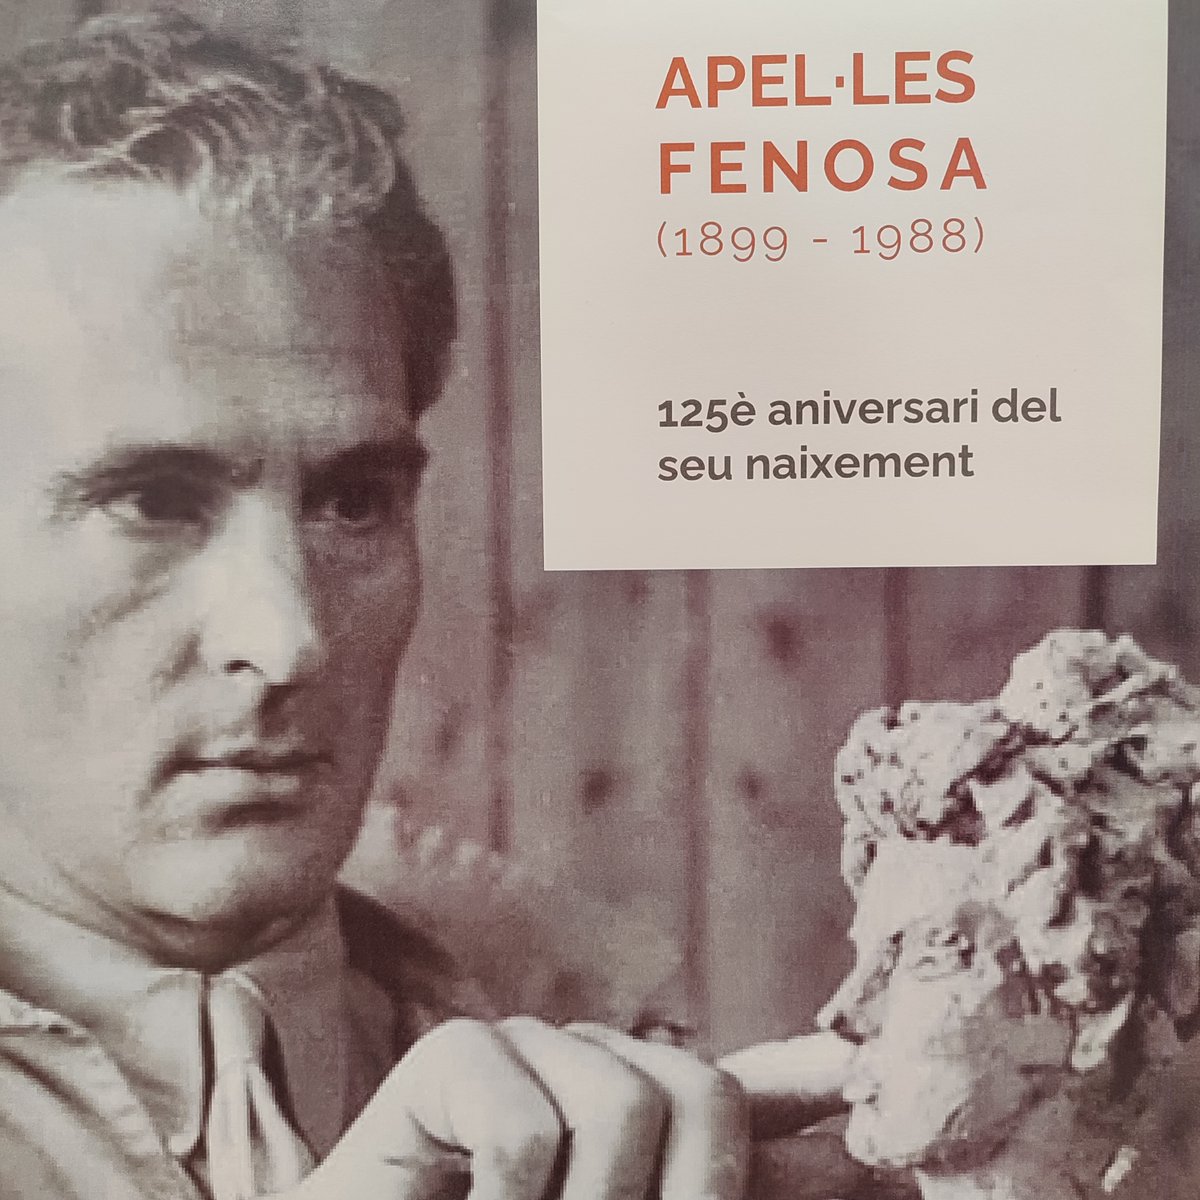 Avui fa 125 anys que l’escultor vendrellenc Apel·les Fenosa va néixer i per commemorar-ho hem preparat una mostra d’algunes de les publicacions referents a Fenosa que tenim a la Col·lecció Local de la Biblioteca. @museufenosa #apel_lesfenosa #125aniversari #elvendrell